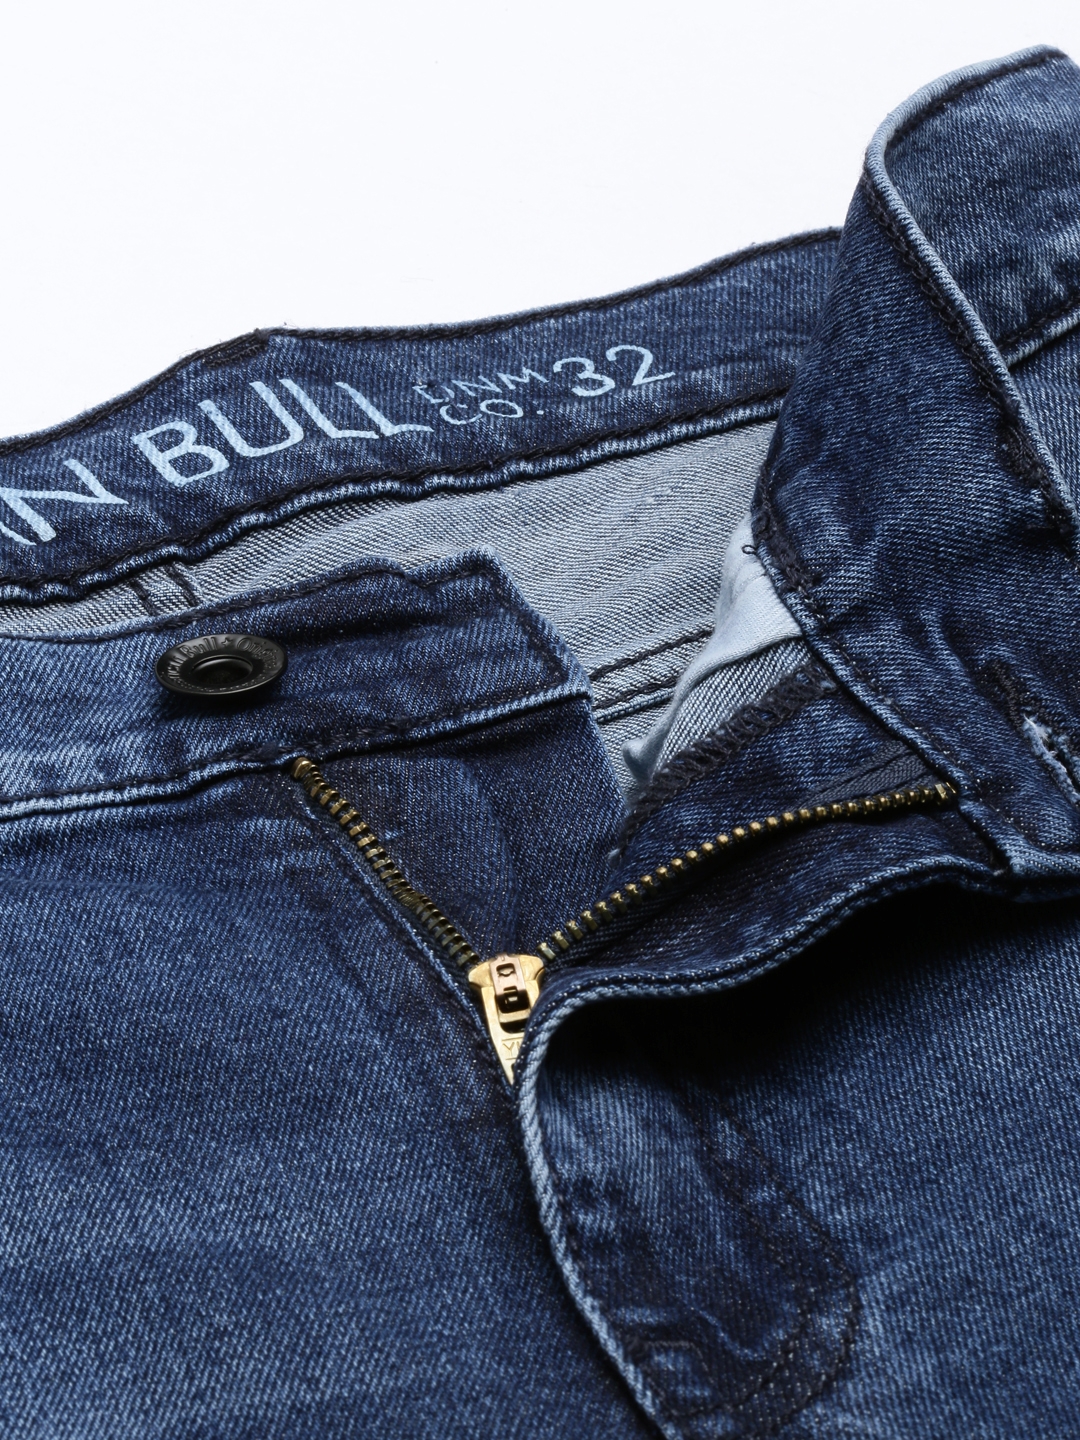 American Bull | American Bull Mens Denim Jeans 5